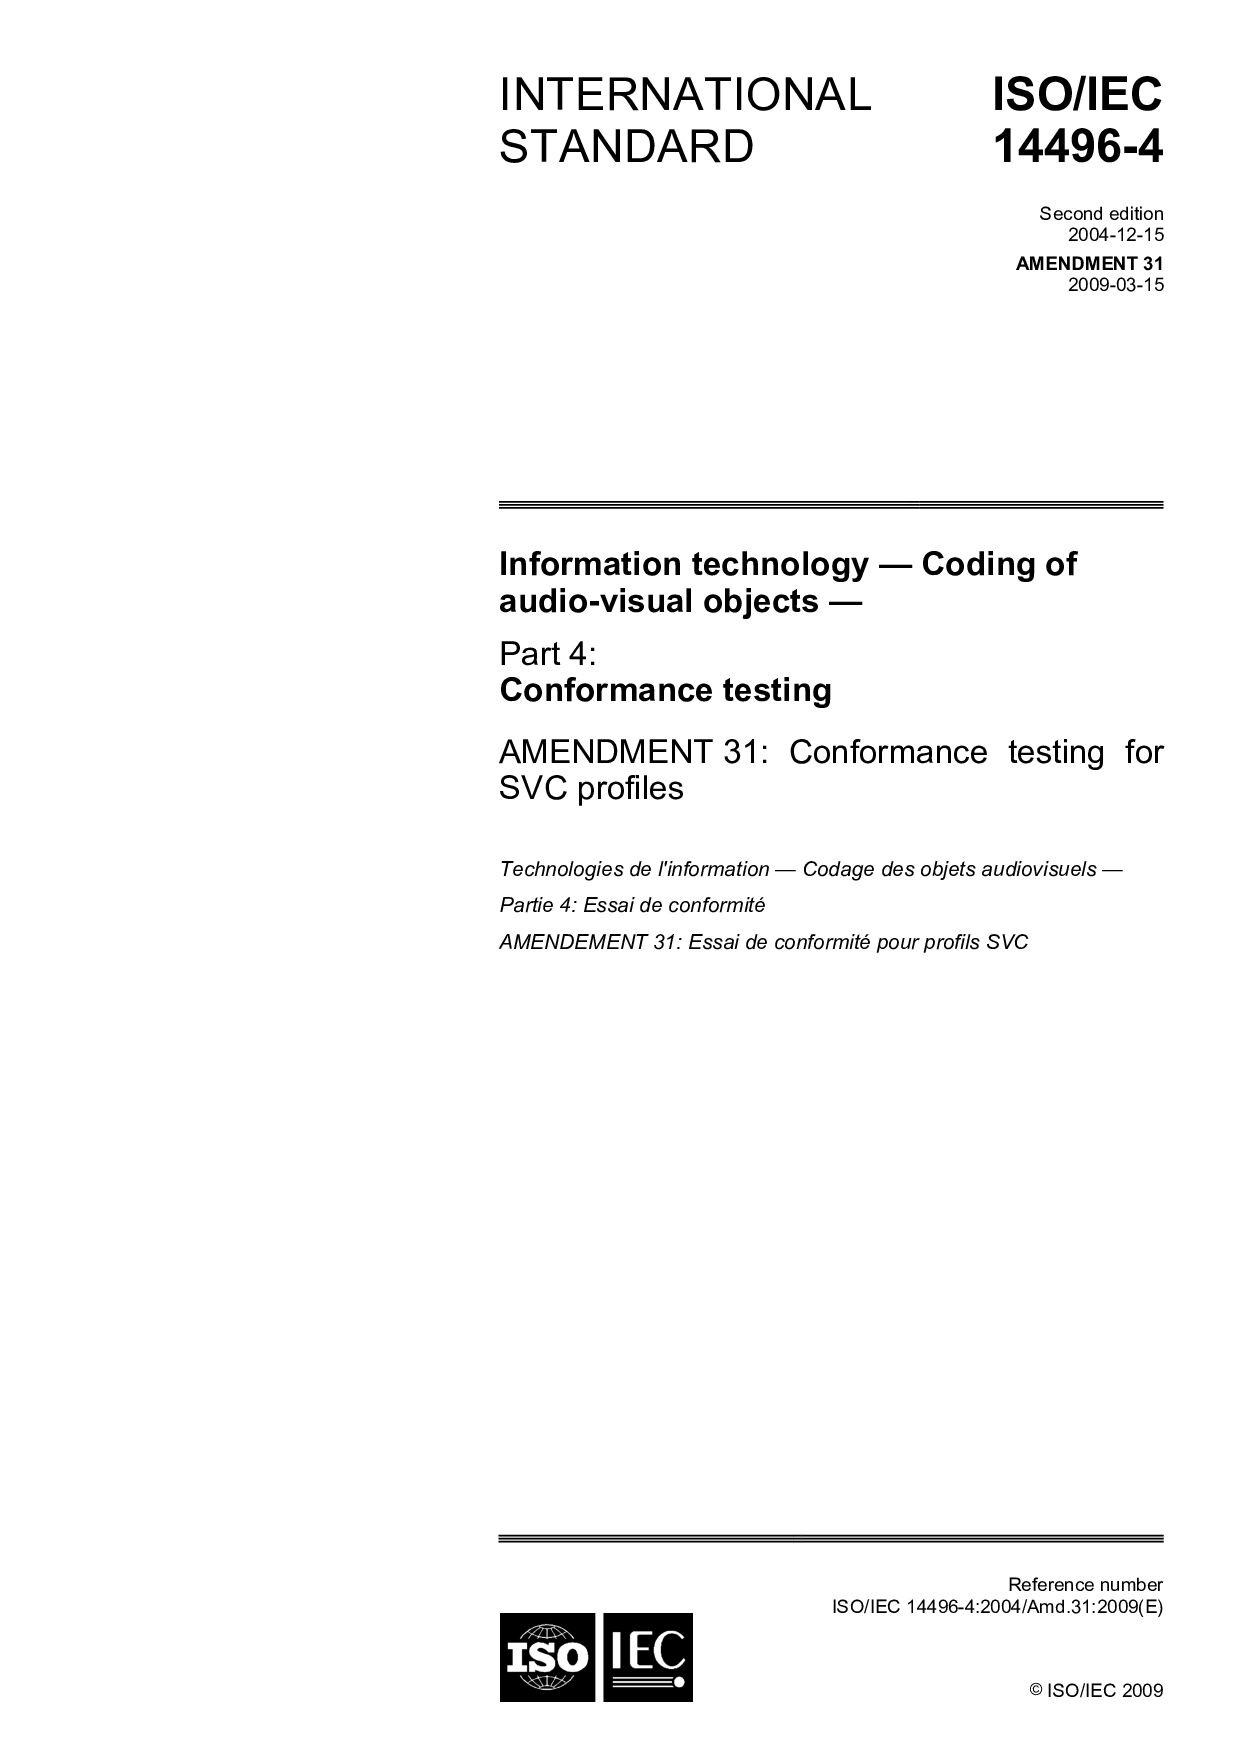 ISO/IEC 14496-4:2004/Amd 31:2009封面图